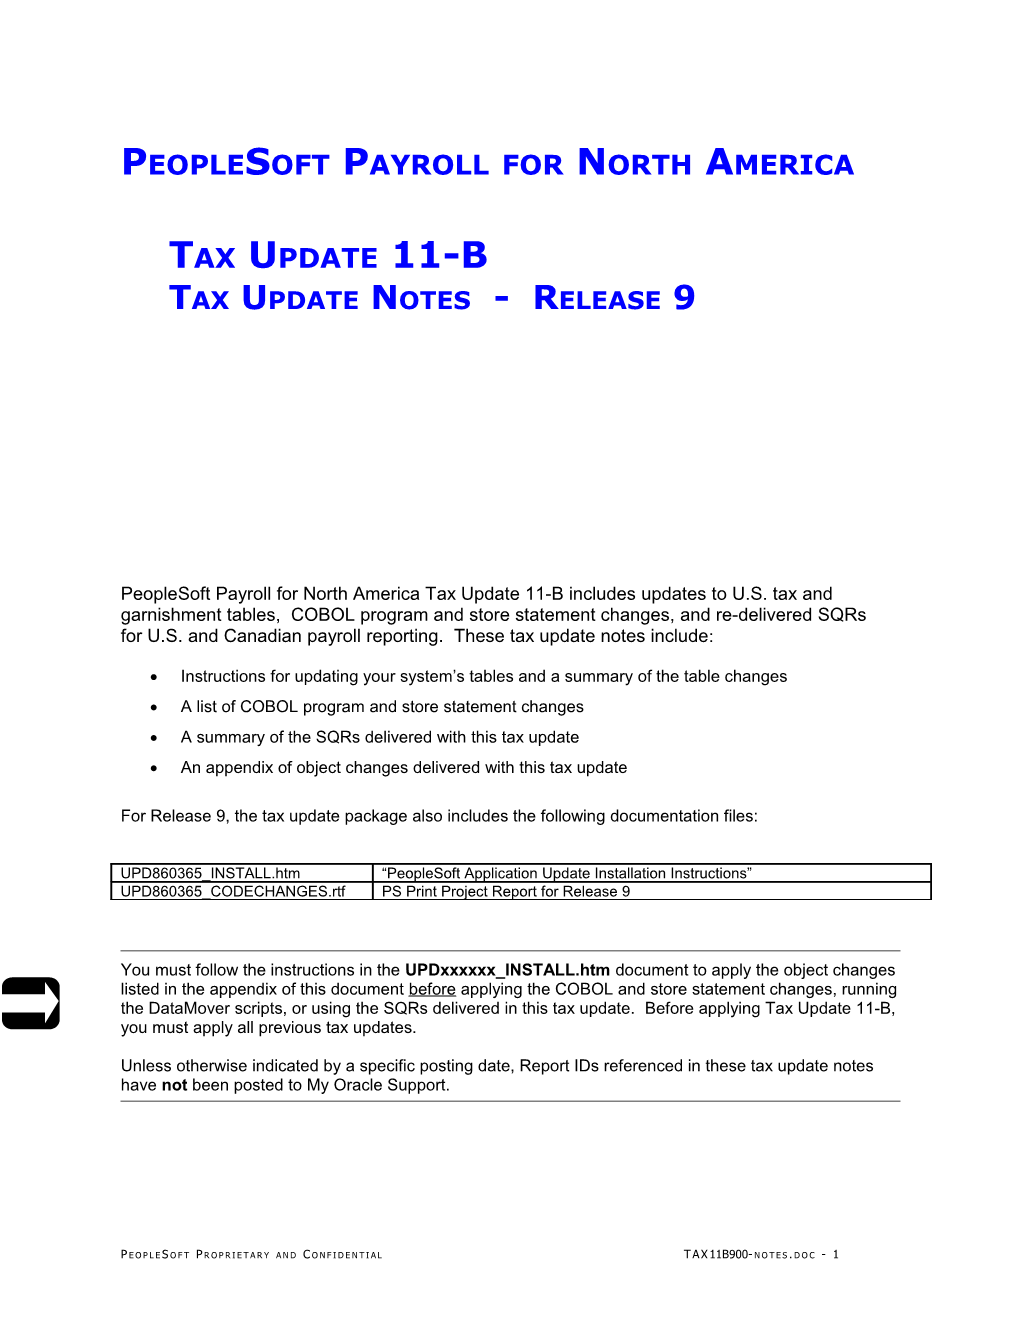 9 - Peoplesoft Payroll Tax Update 11-B